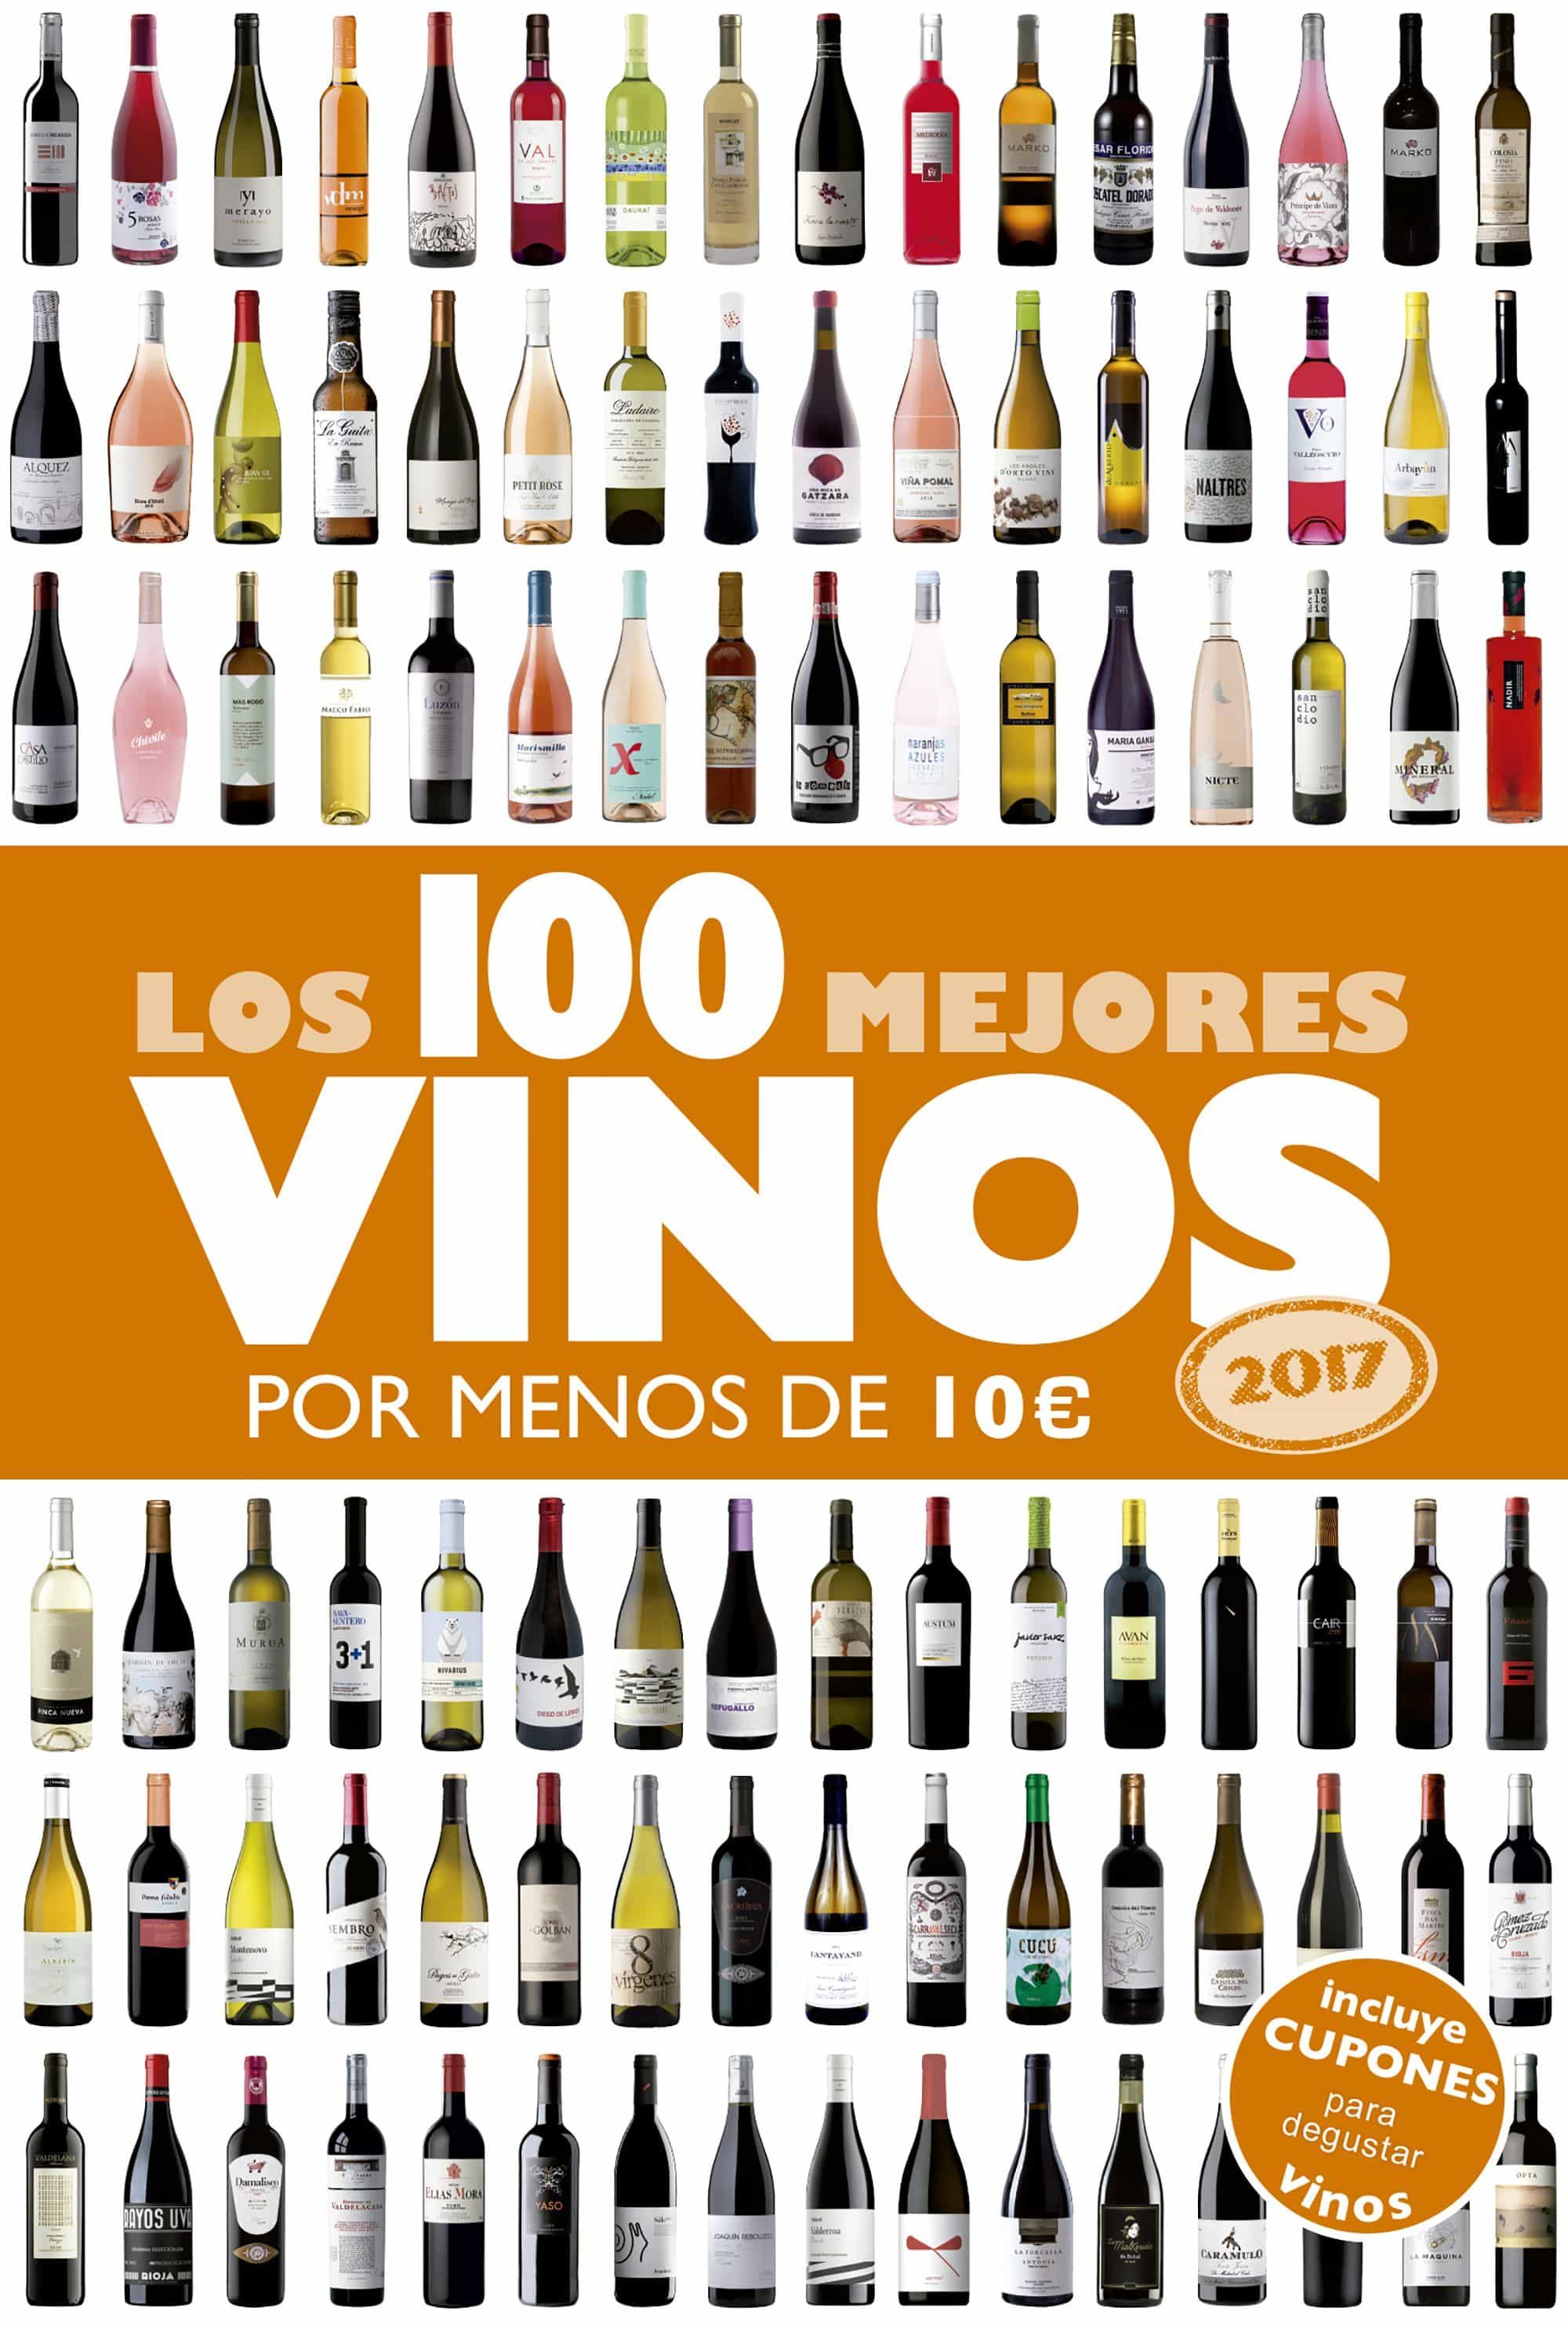 Los 100 mejores vinos por menos de 10 euros (2017) - Alicia Estrada Alonso 9788408152354